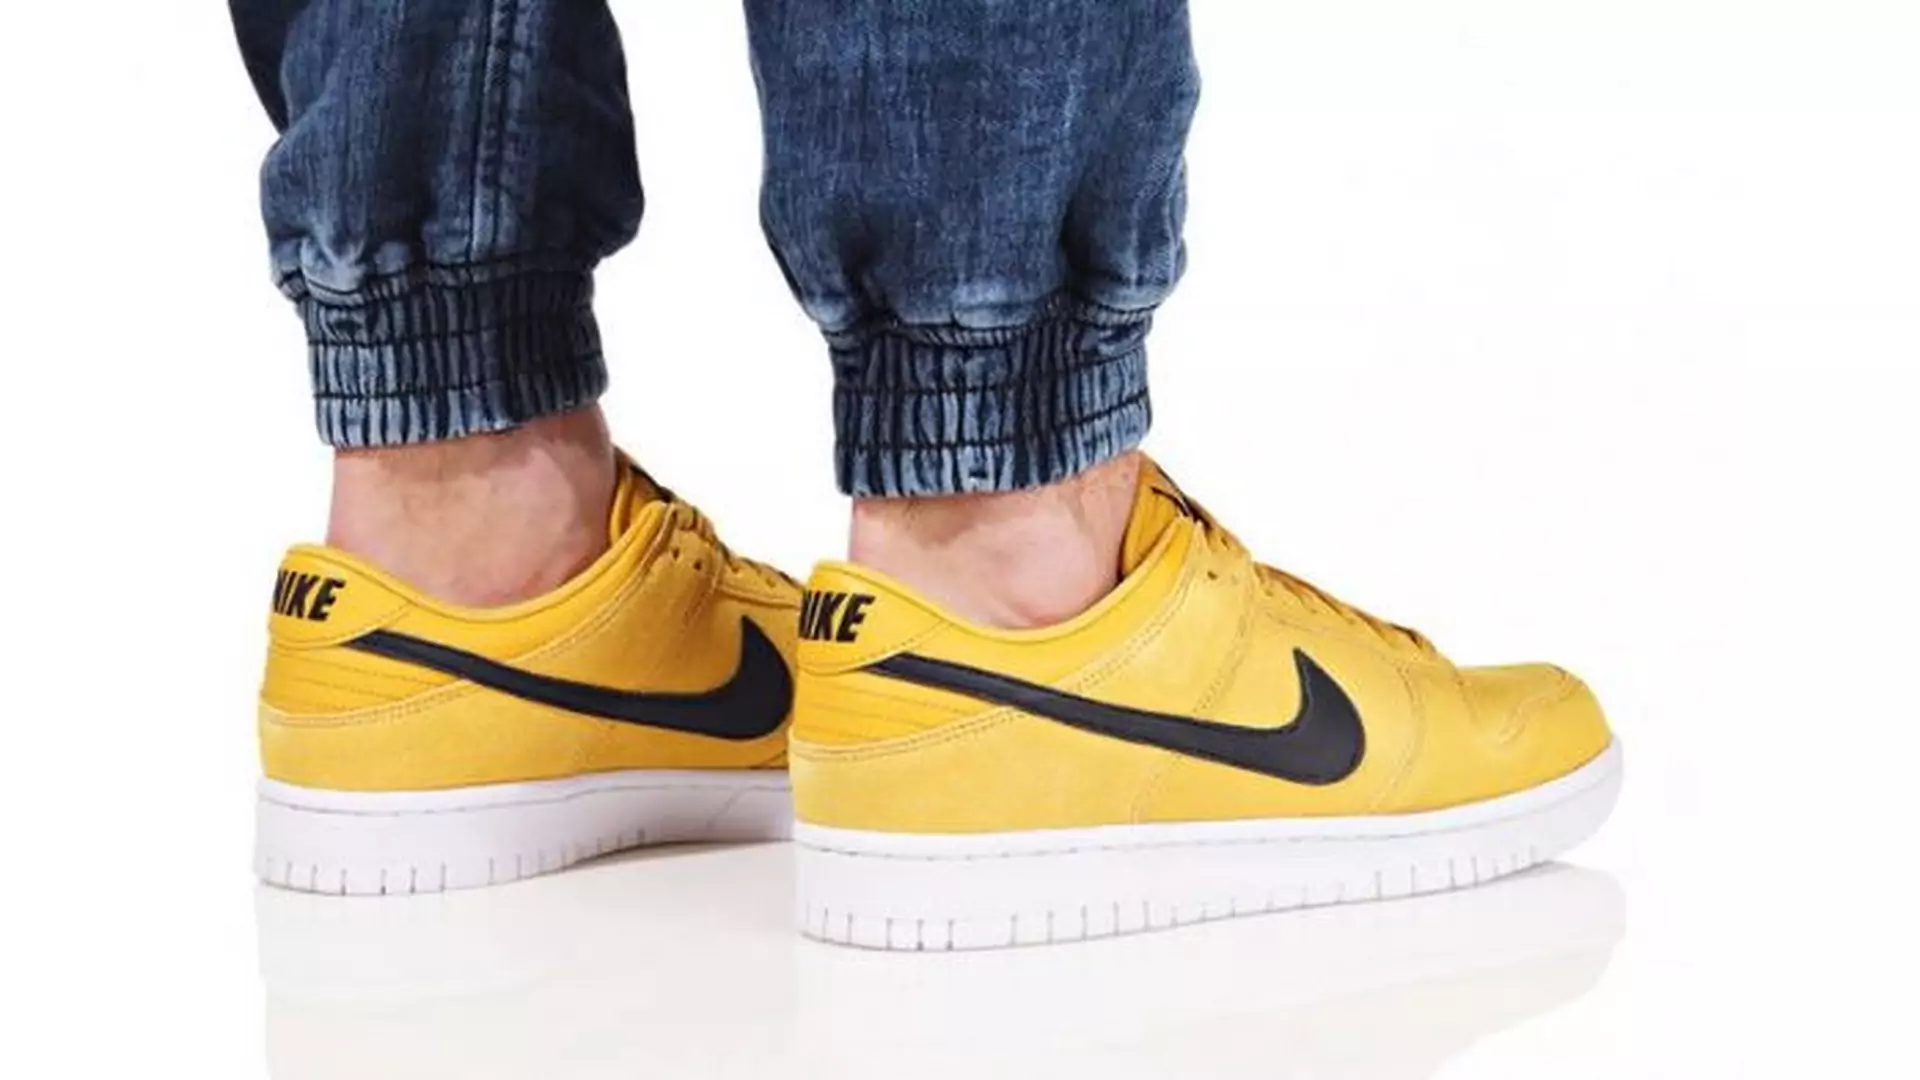 Zaszalej z kolorem i wskocz w żółte sneakersy. Garść propozycji